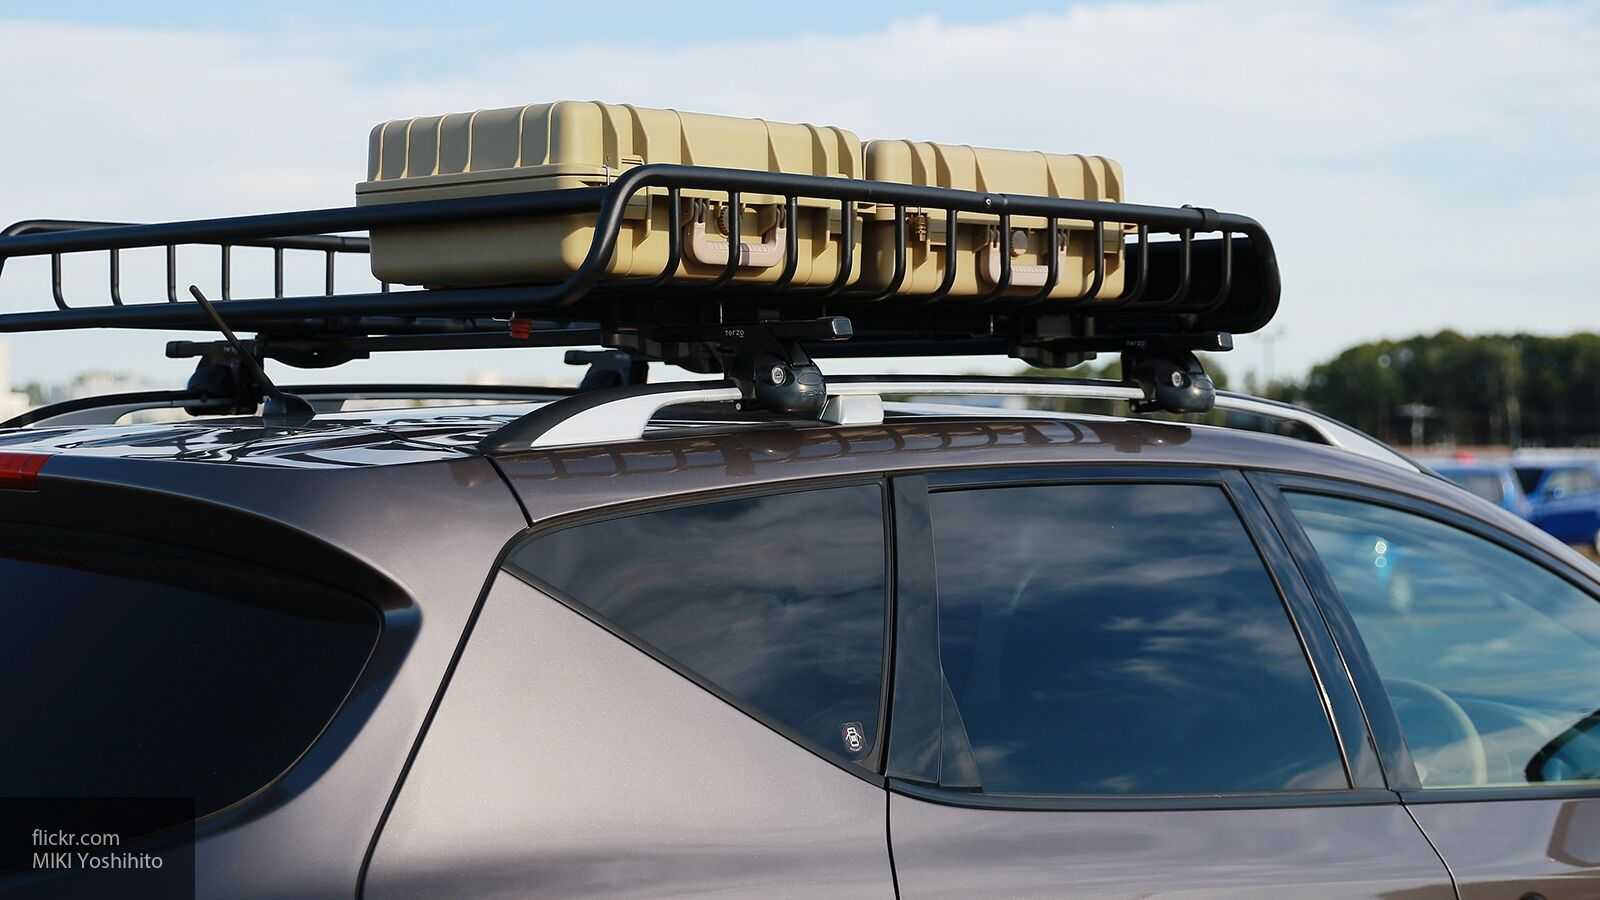 3 случая, когда багажник на крыше — повод для штрафа